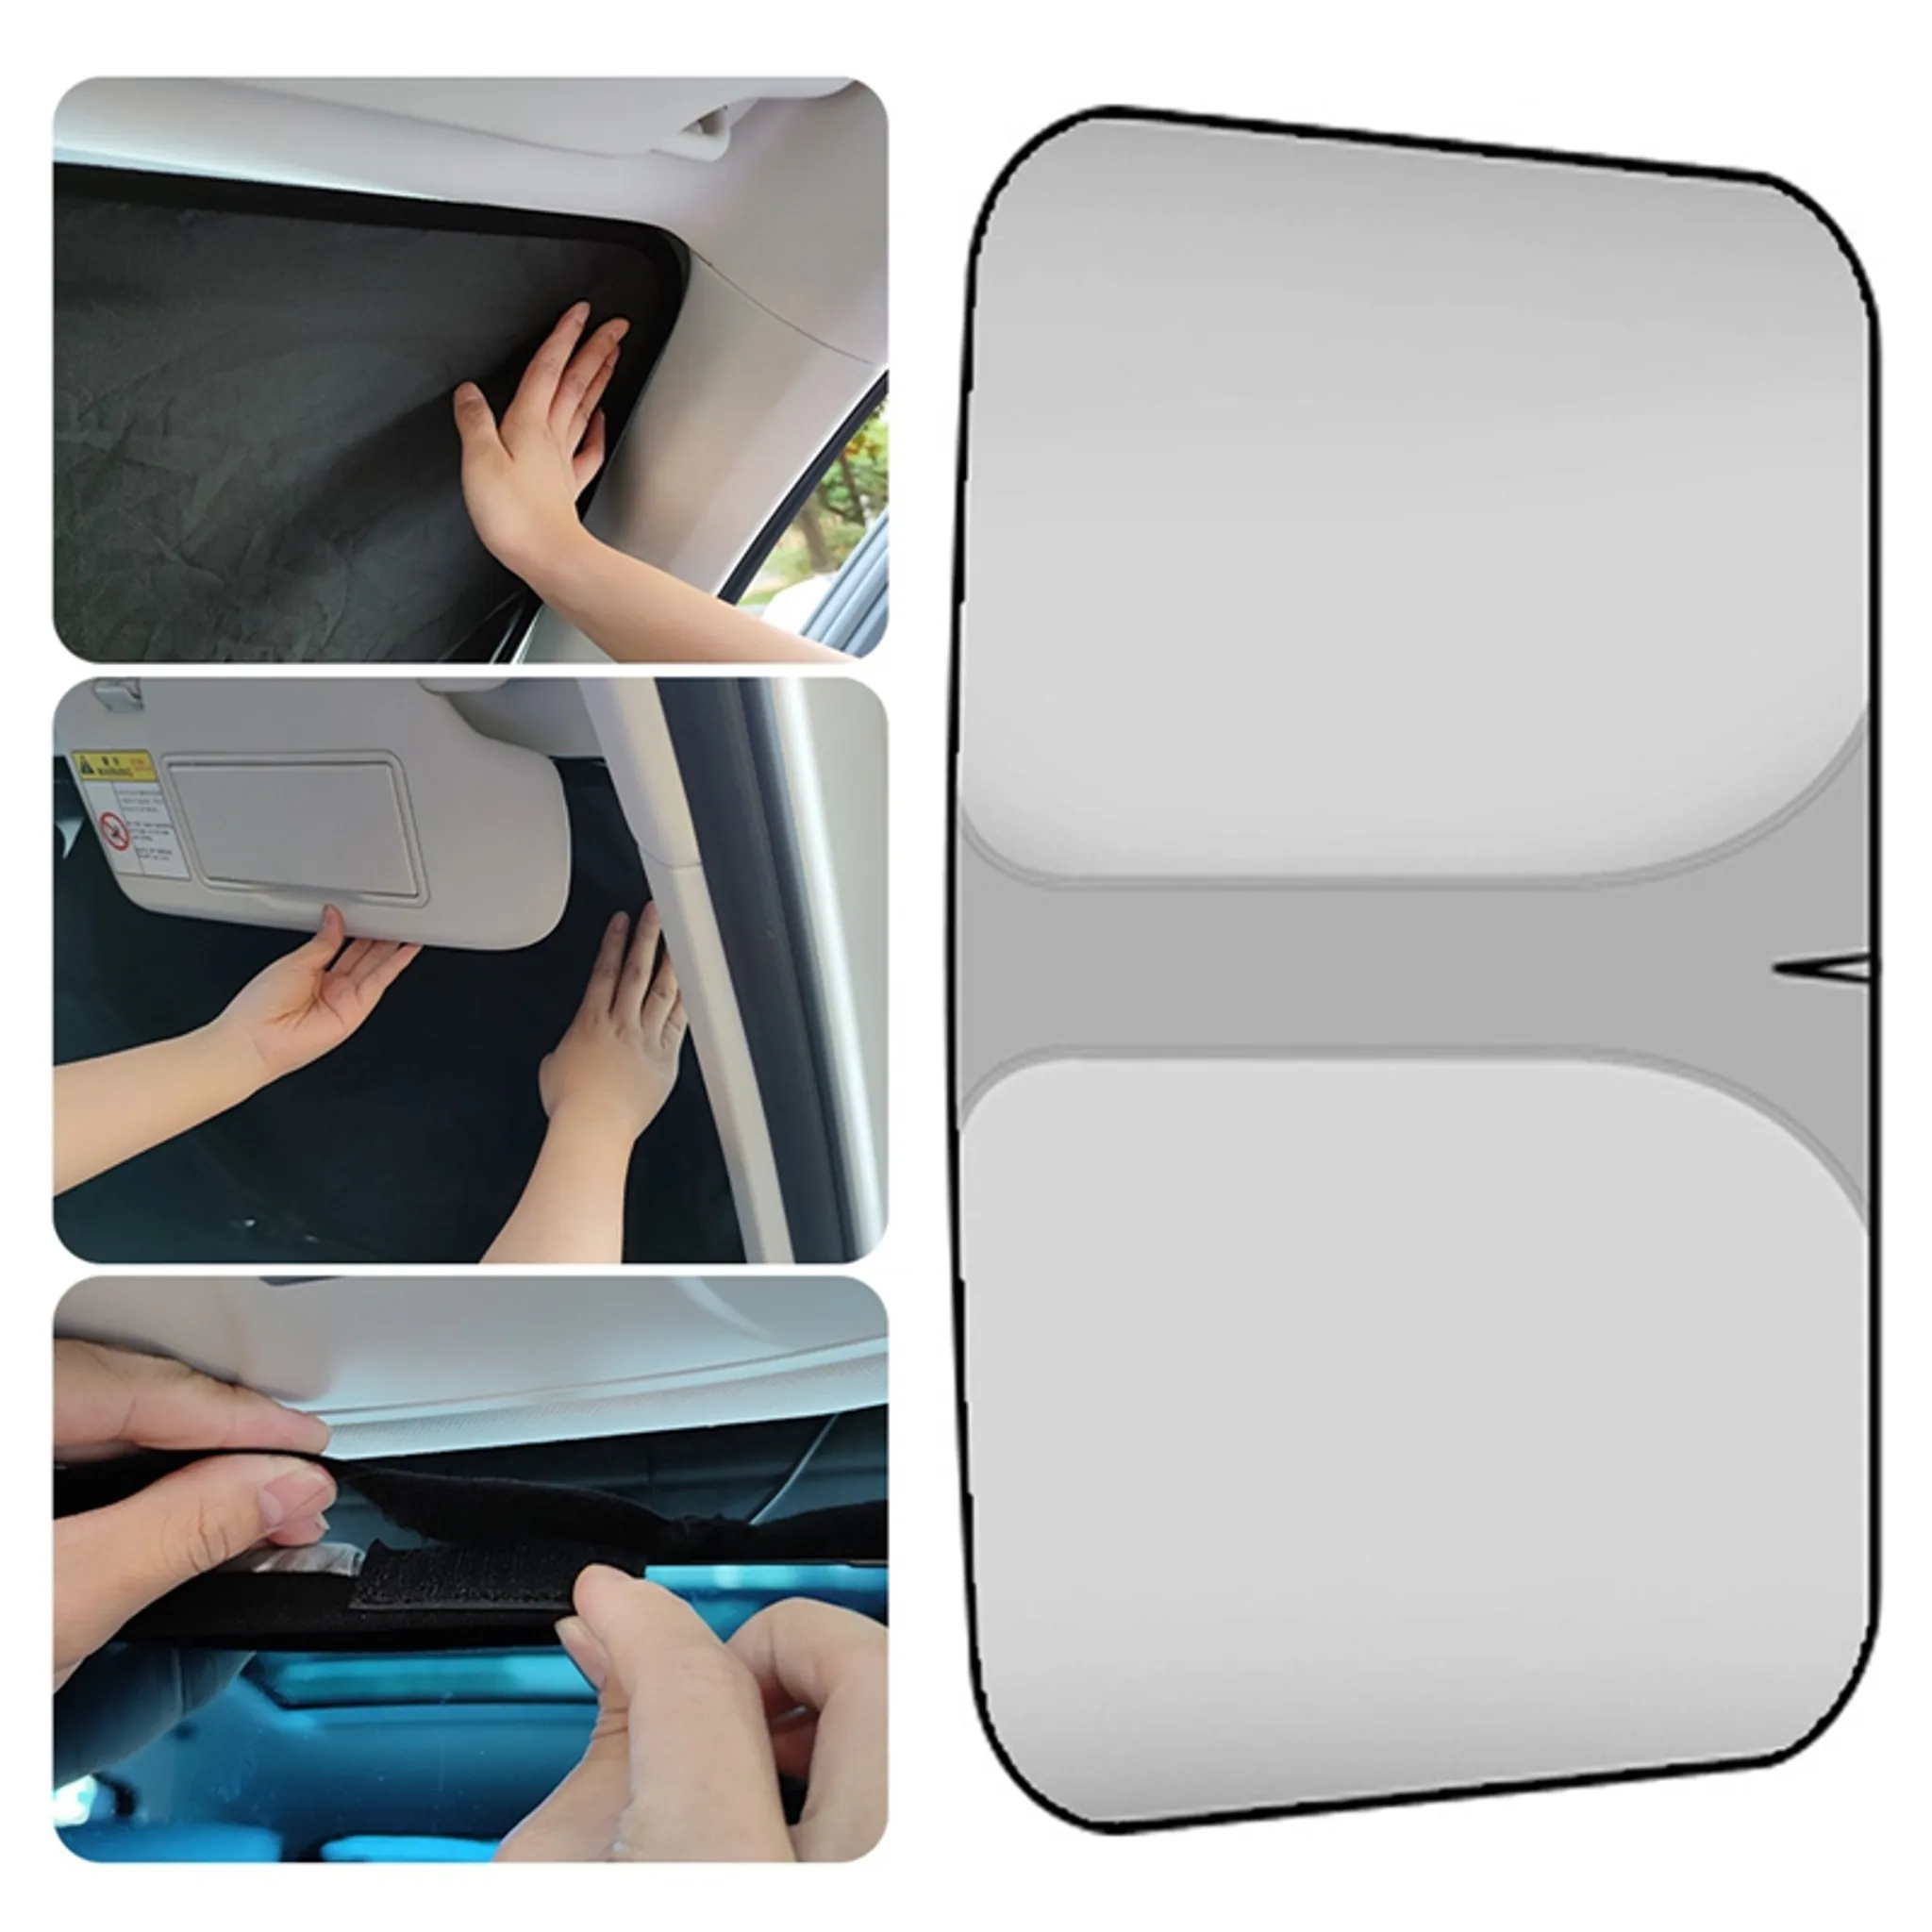 Universal Auto-Sonnenschutz 90 cm Autofenster UV Schutz Einhand